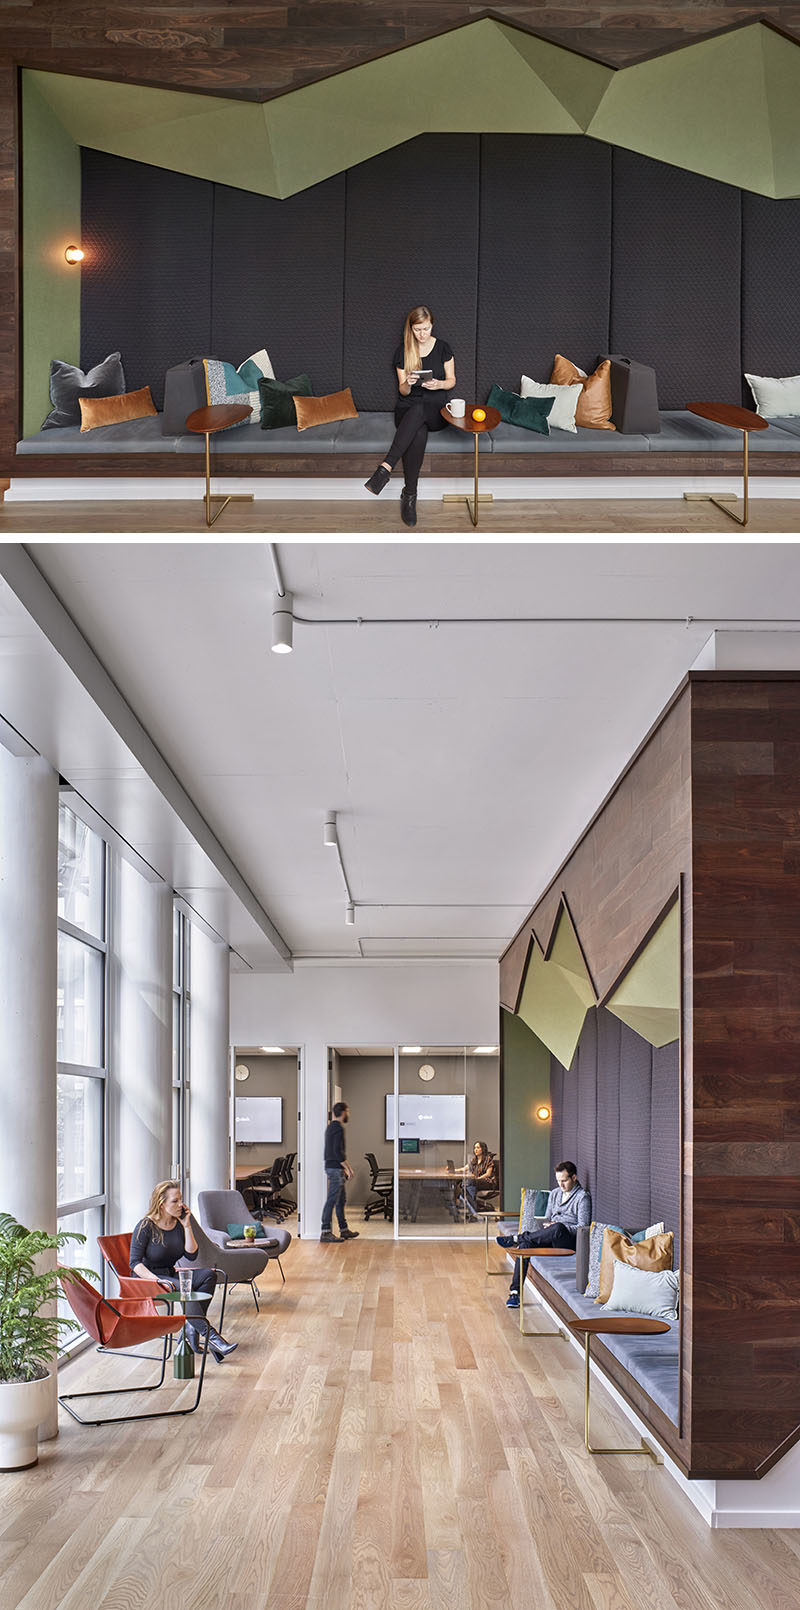 Идеи для сидения - В этом современном офисе есть сидения на стене, которые напоминают резкую геометрию горных вершин в отличие от мягких текстур и звукопоглощающей теплоты его обивки. # Место для сидения # Место для офиса # Дизайн для сидения